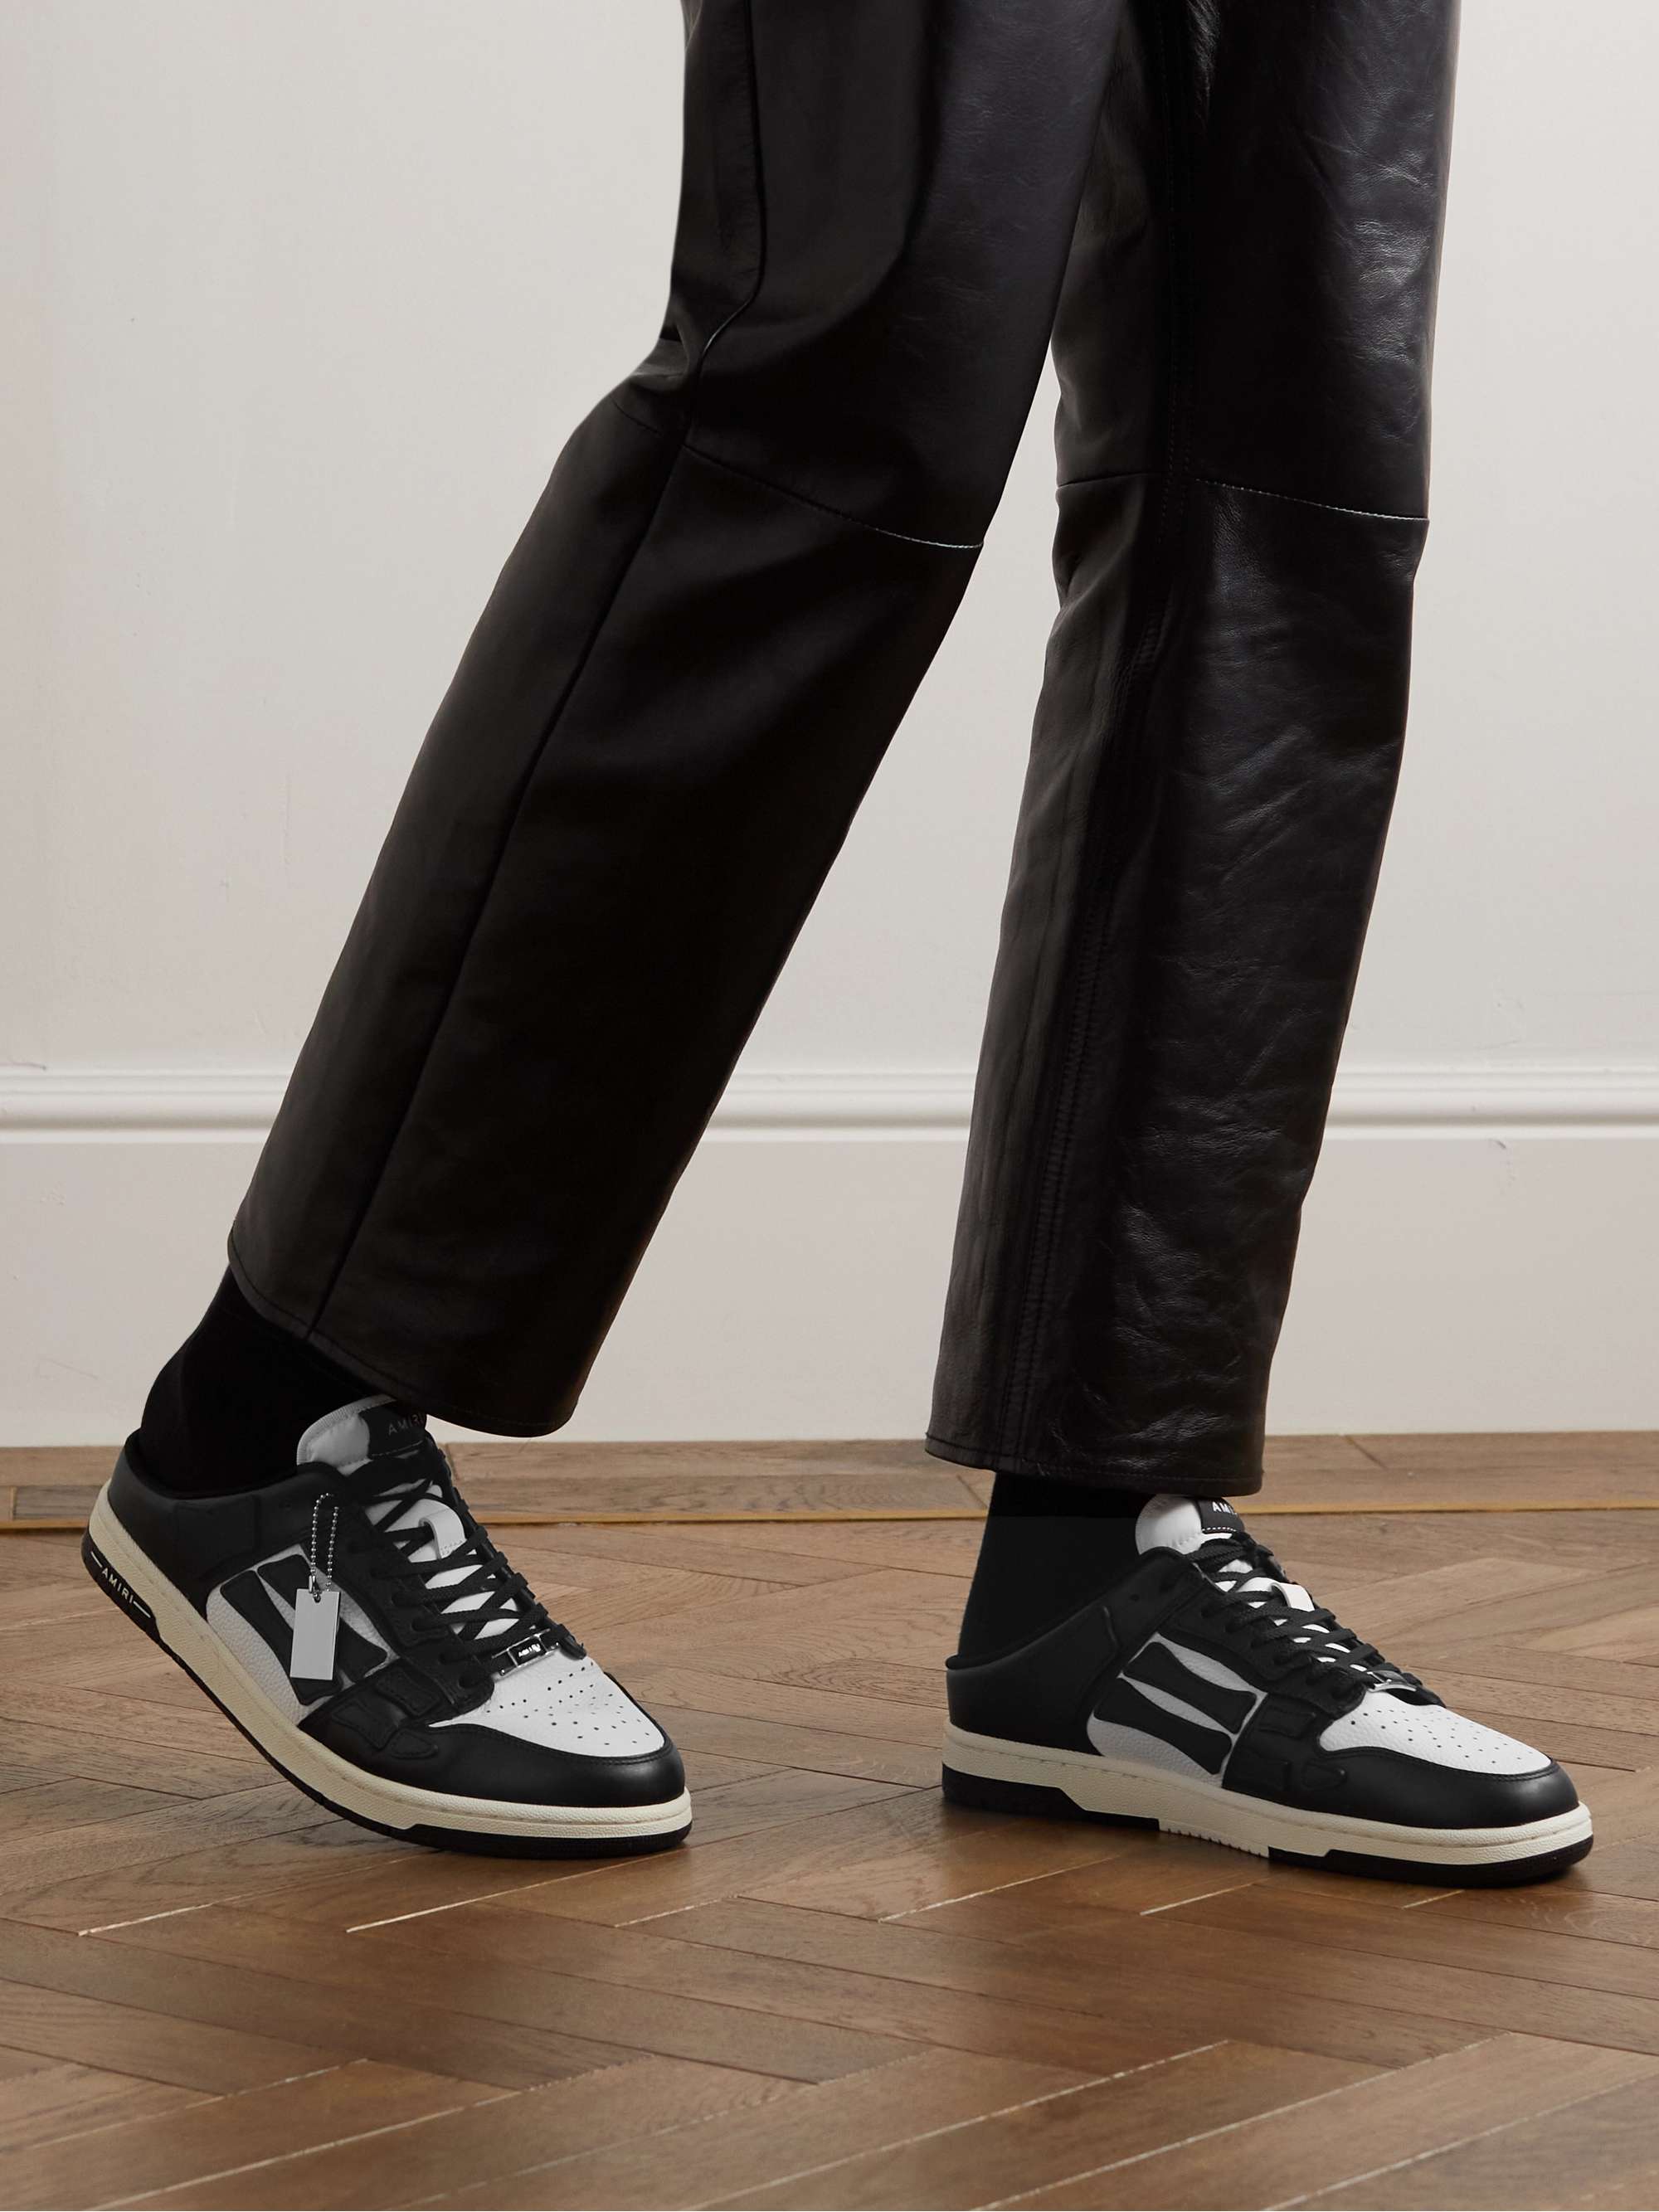 AMIRI Skel-Top Colour-Block Leather Slip-On Sneakers